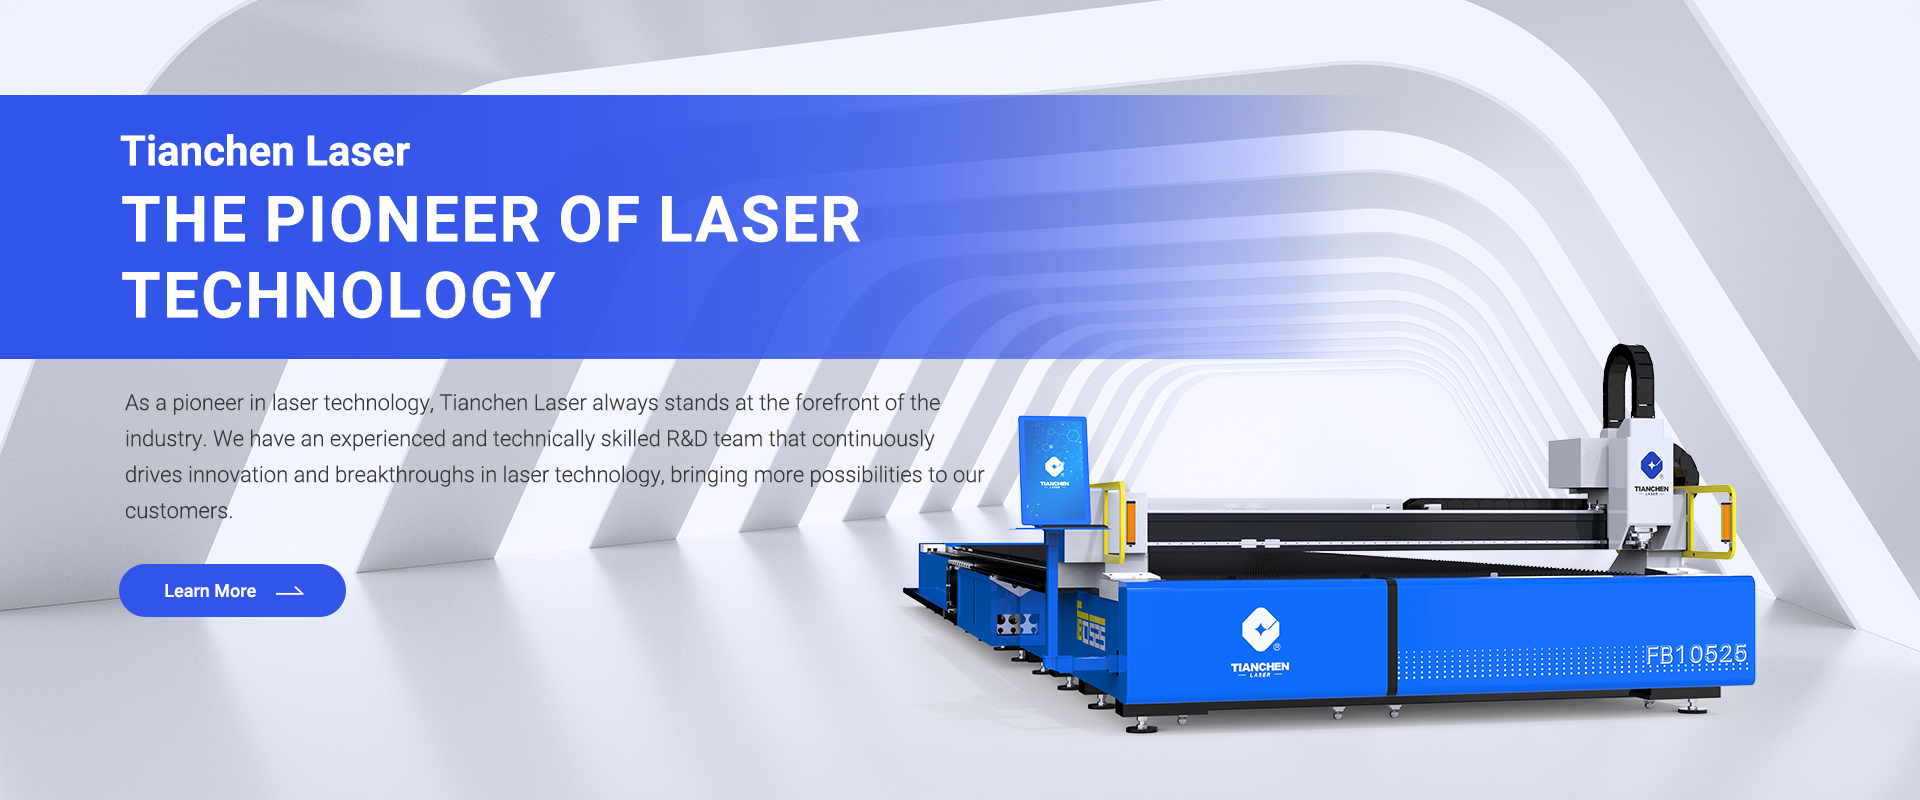 2000W Fiber Laser Cutting Machine